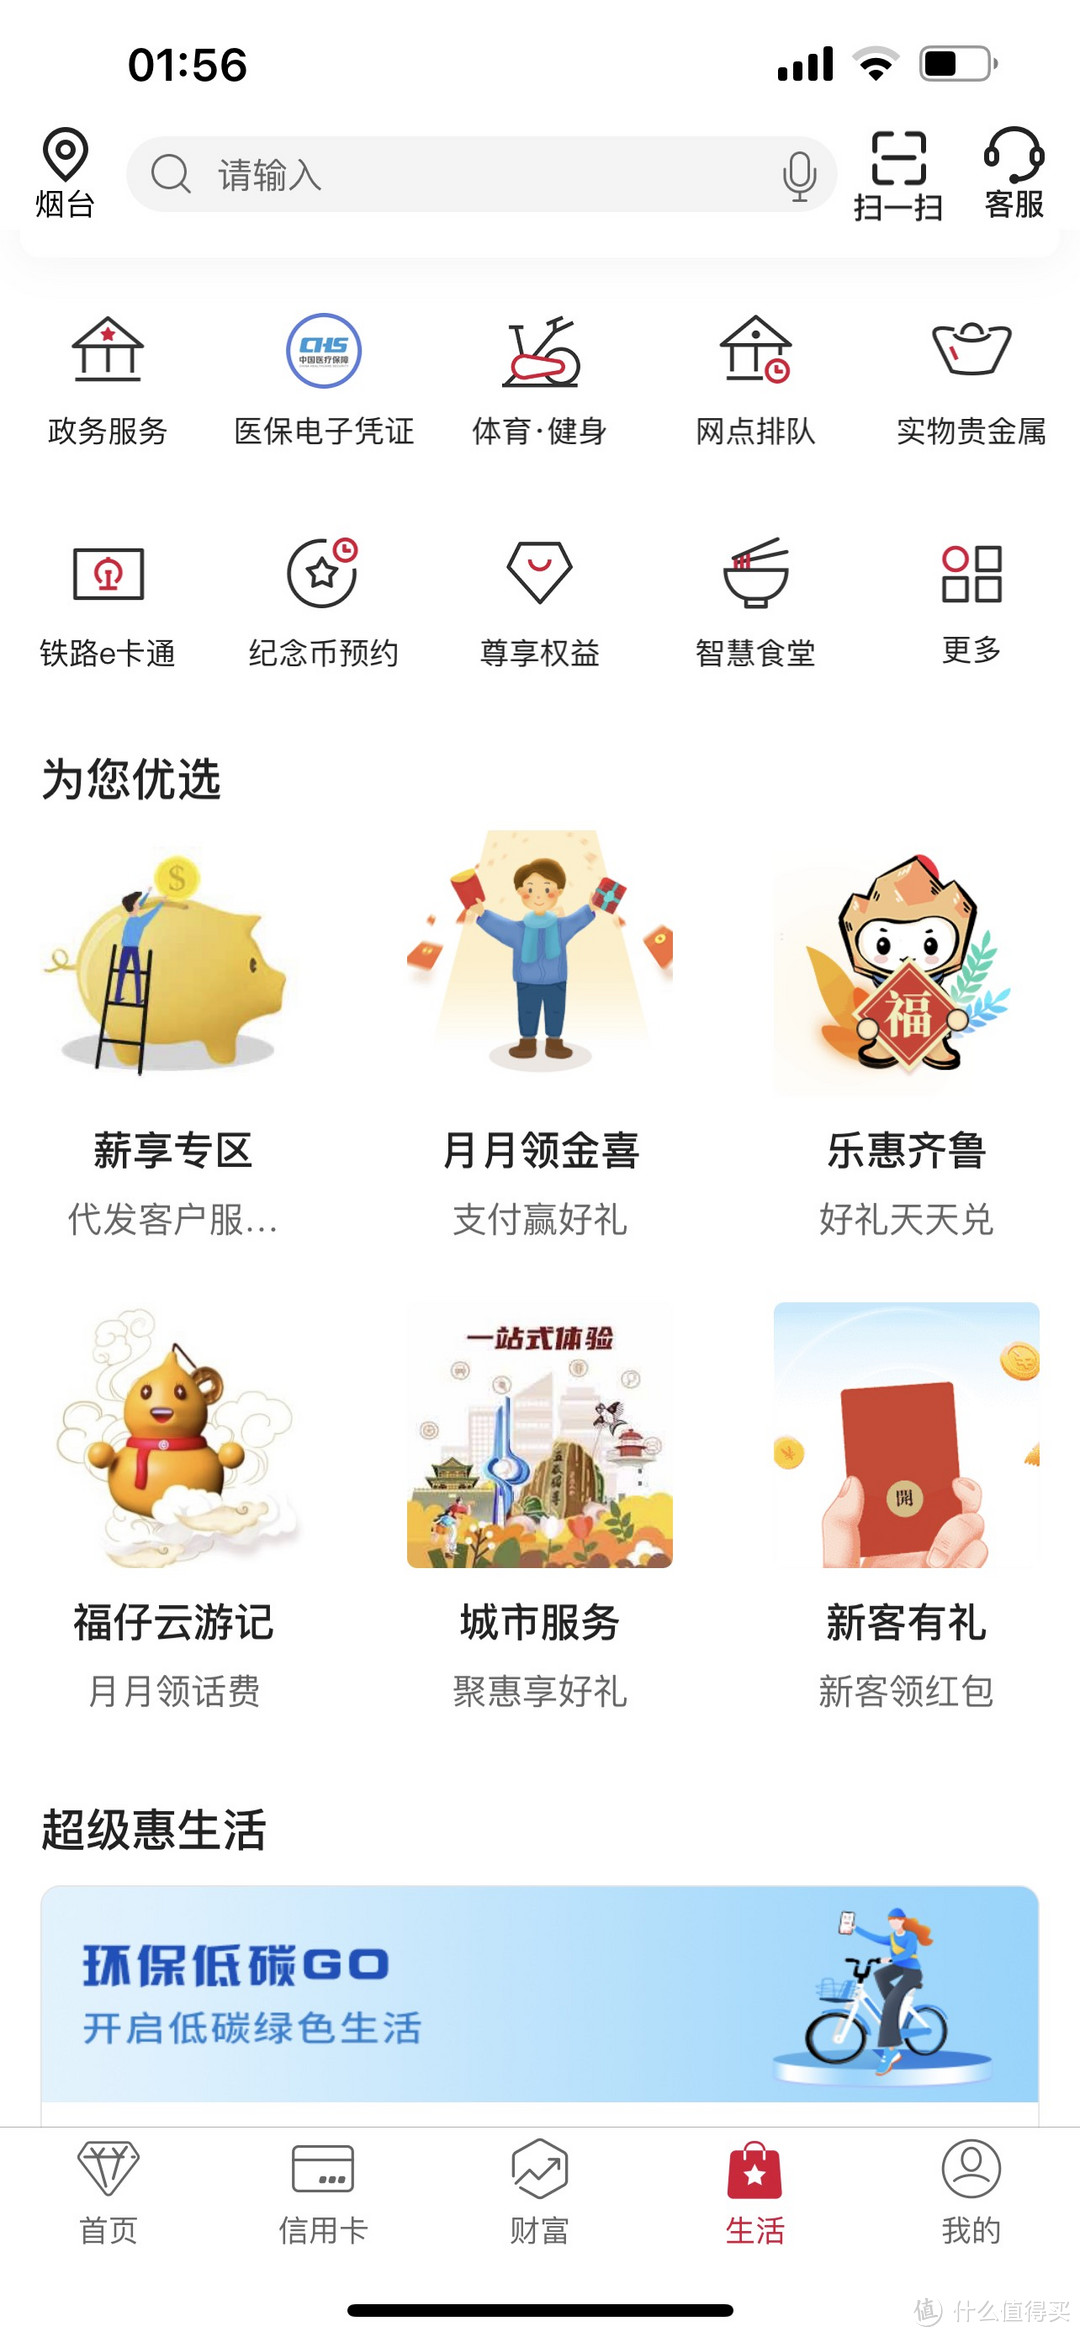 中国银行每月必有微信立减金1-20元领取